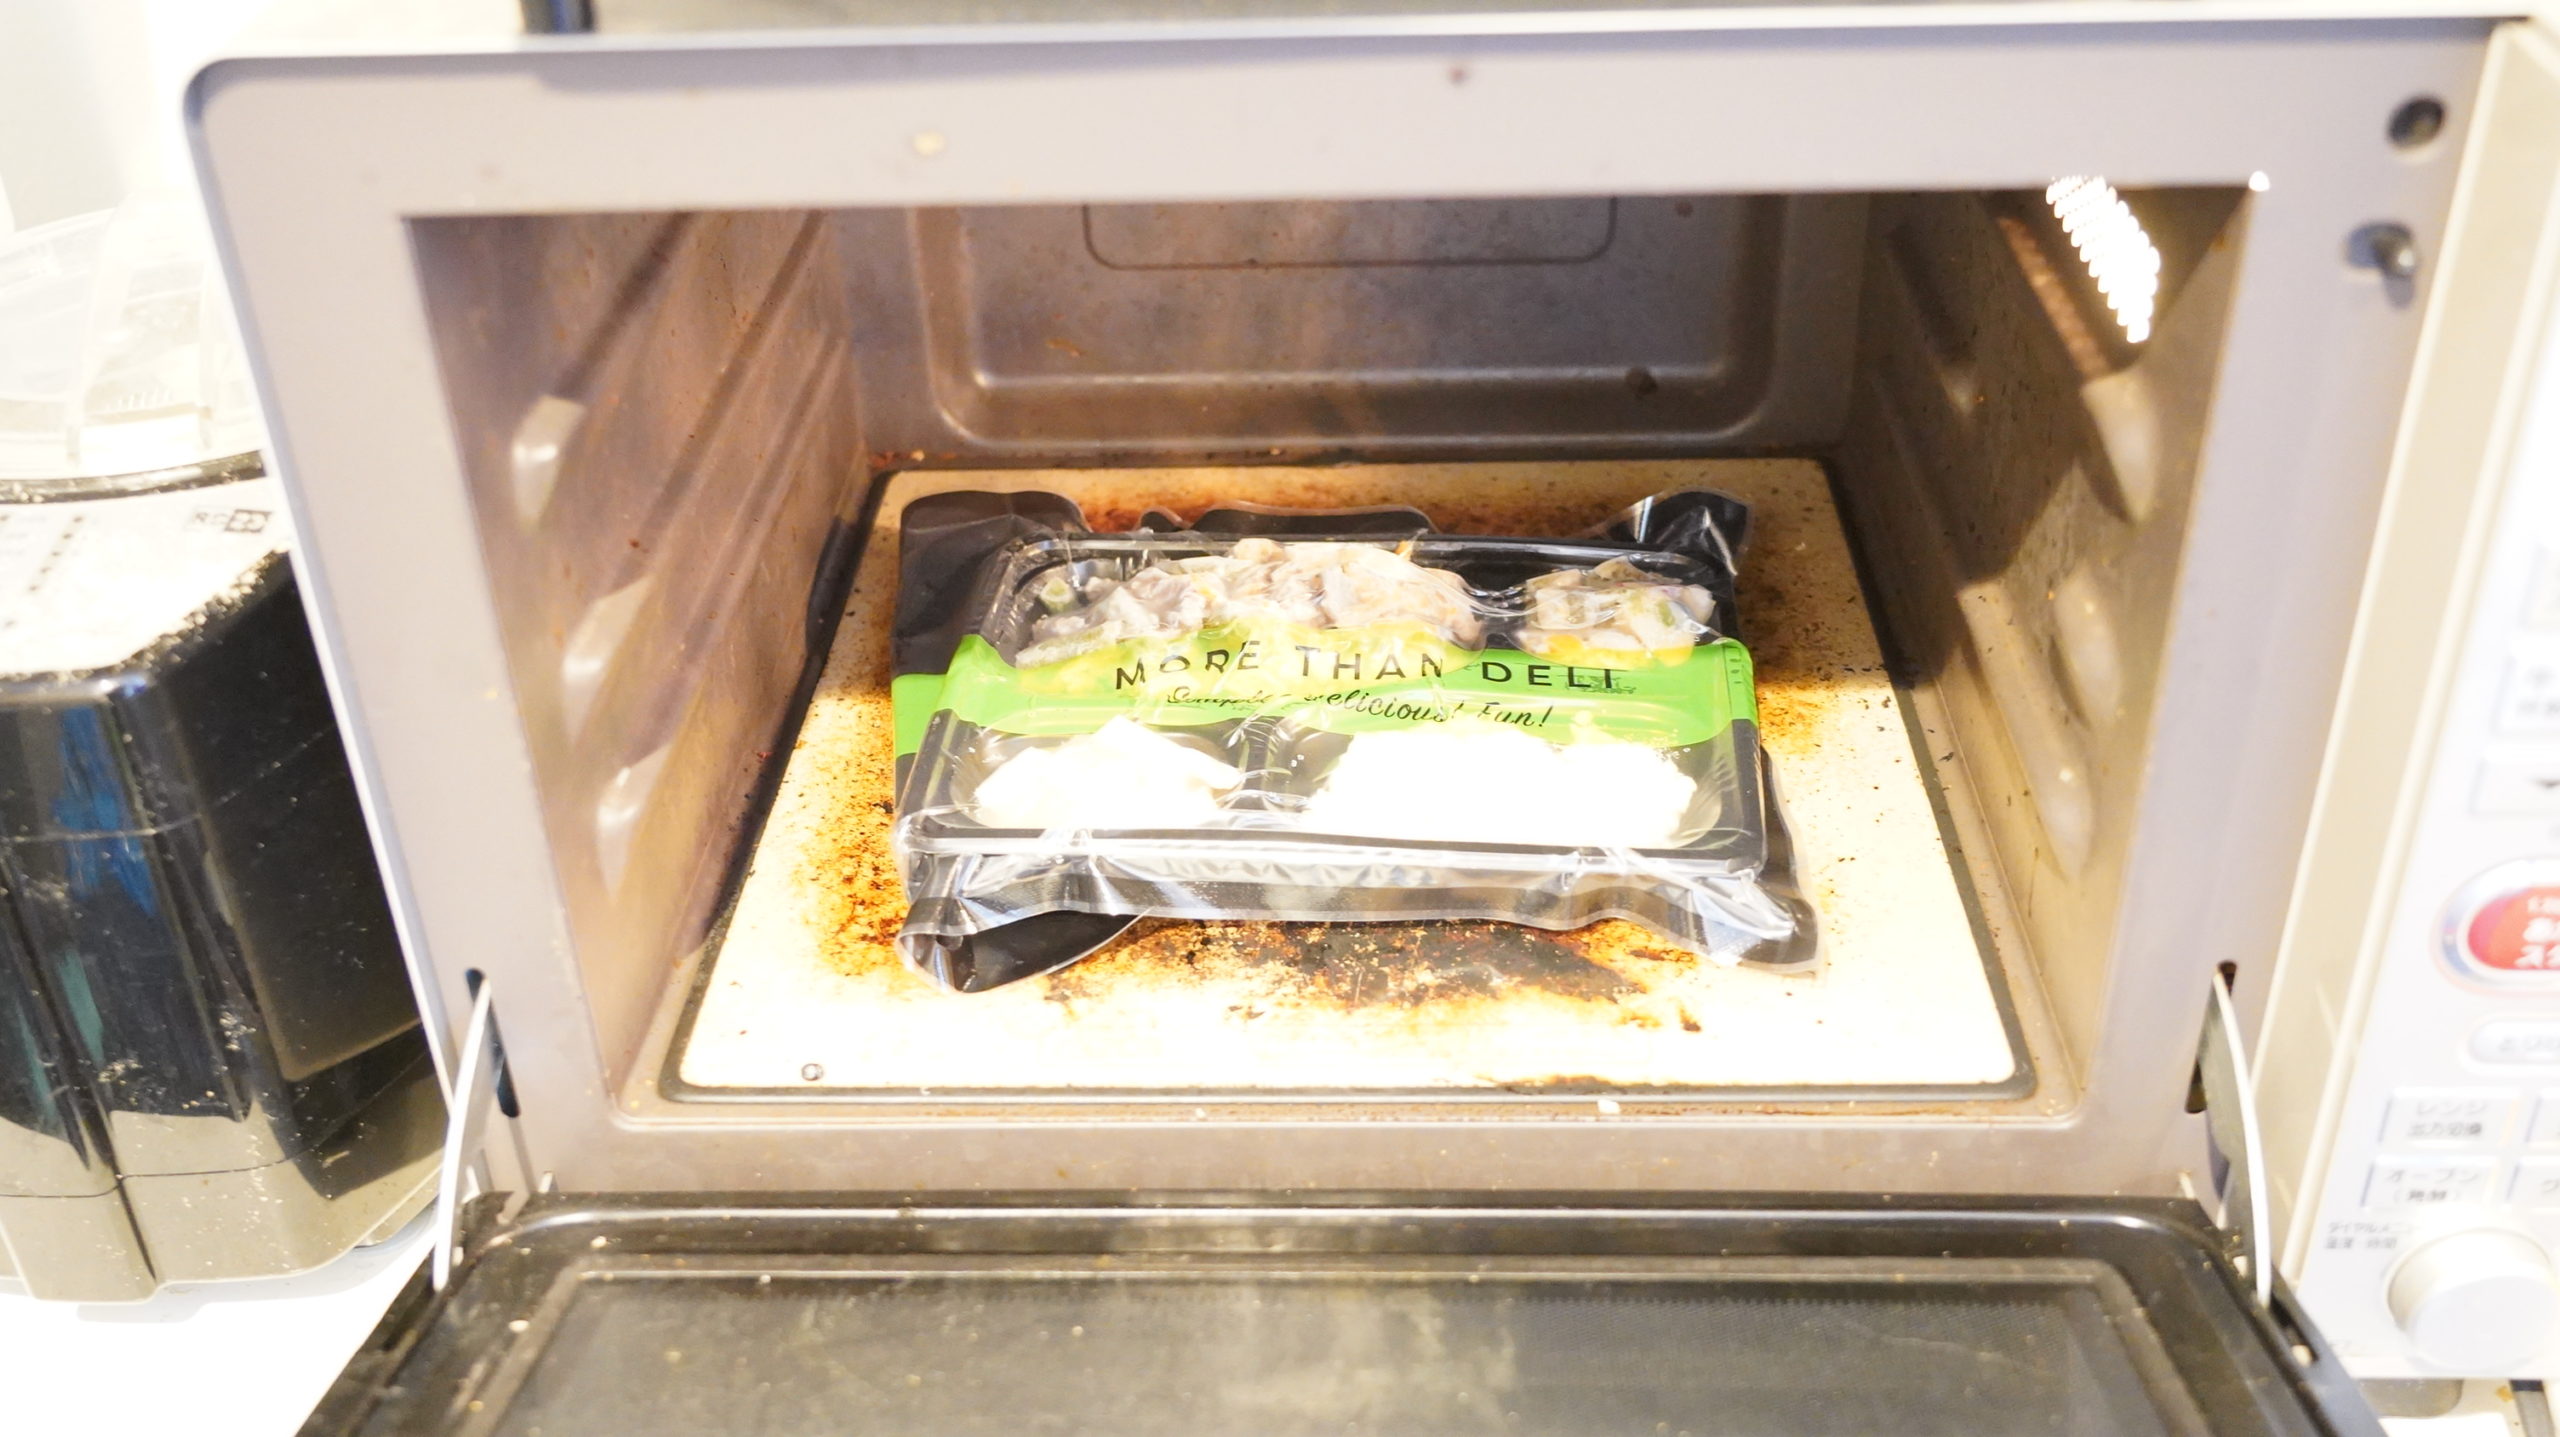 More than Deli（モアザンデリ）の冷凍弁当「鶏肉と野菜の黒酢あんかけ」を電子レンジで加熱している写真